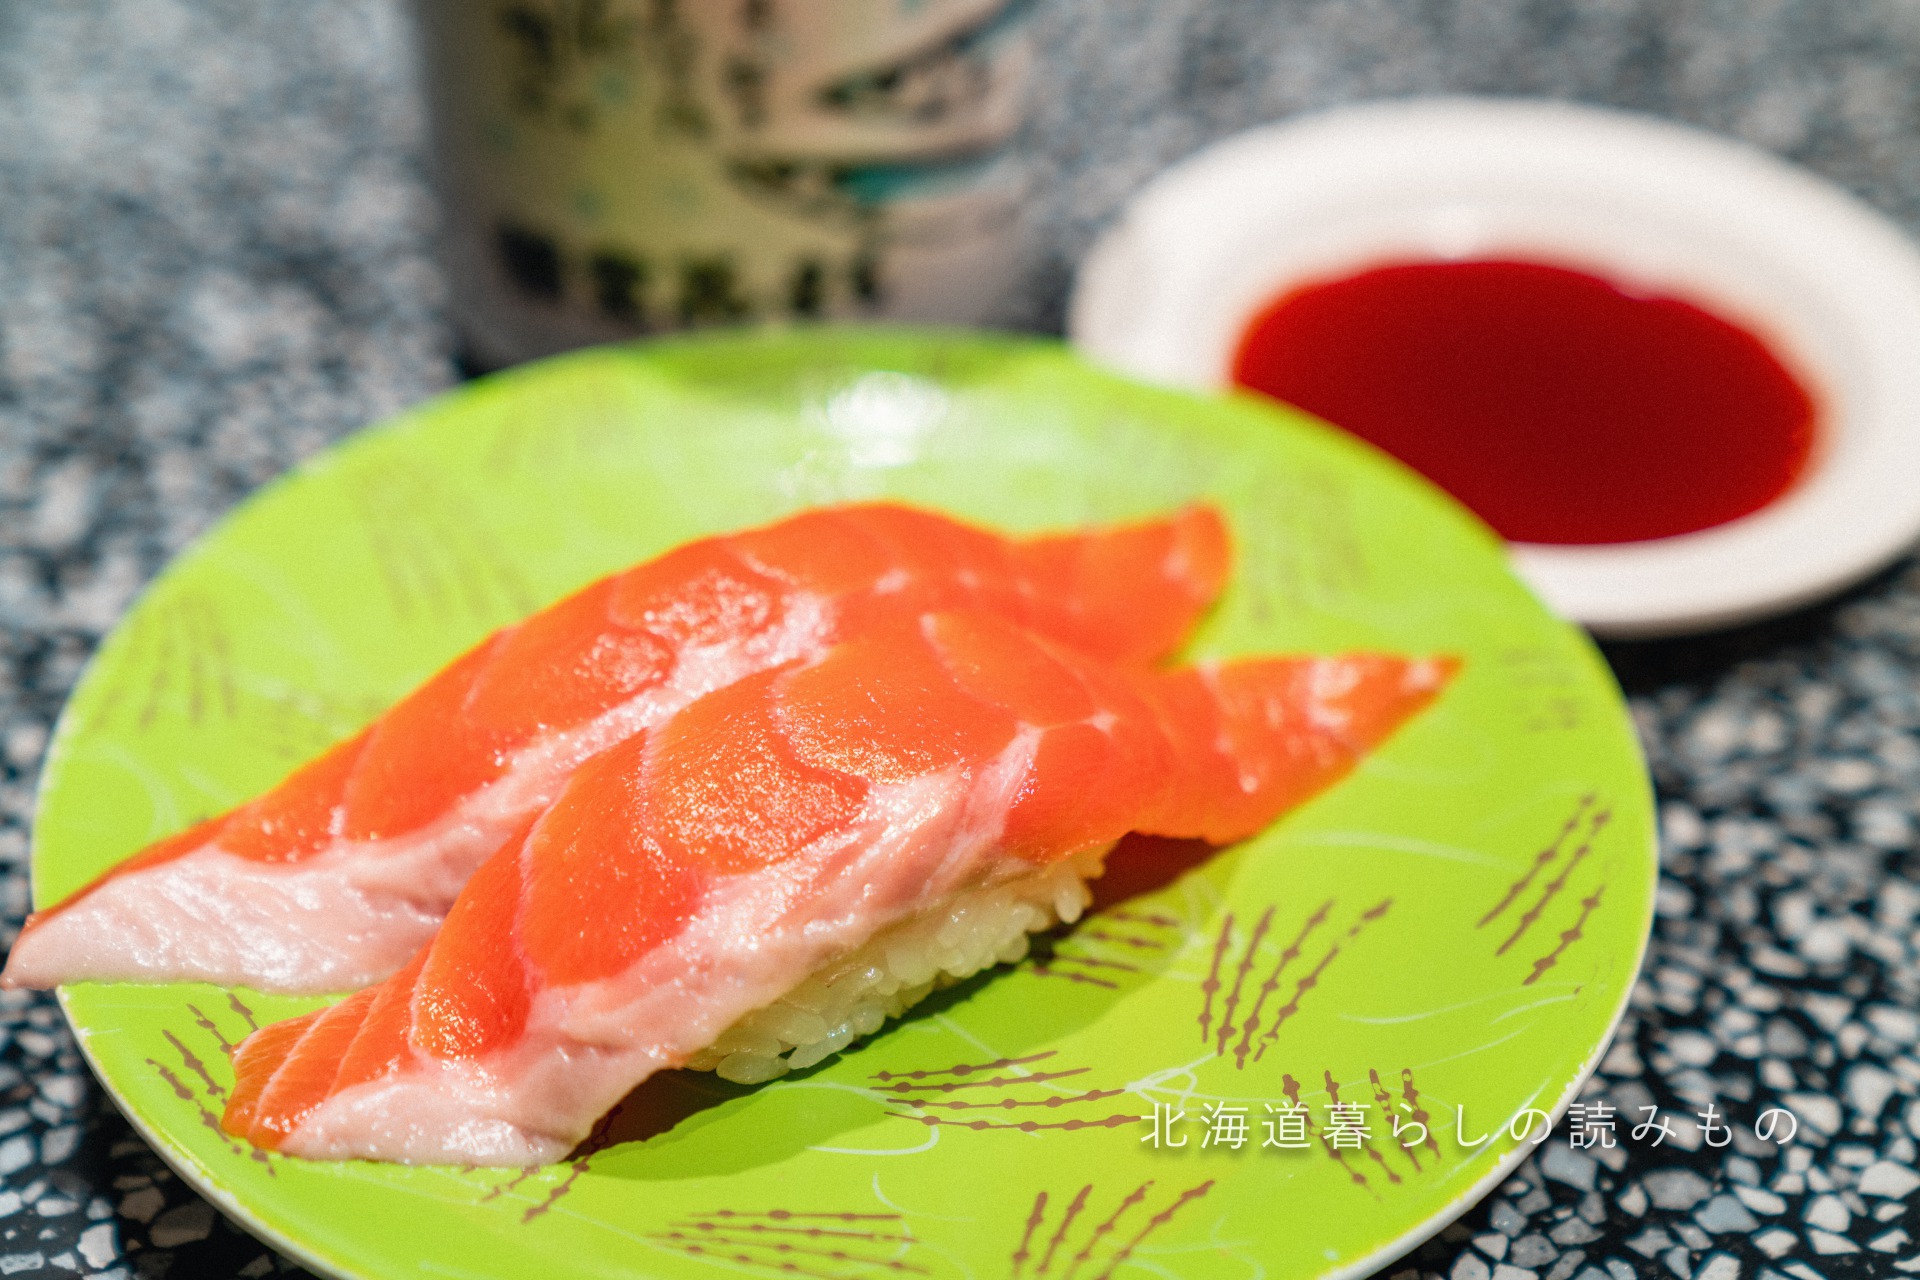 迴轉壽司根室花丸的菜單上的「Salmon」